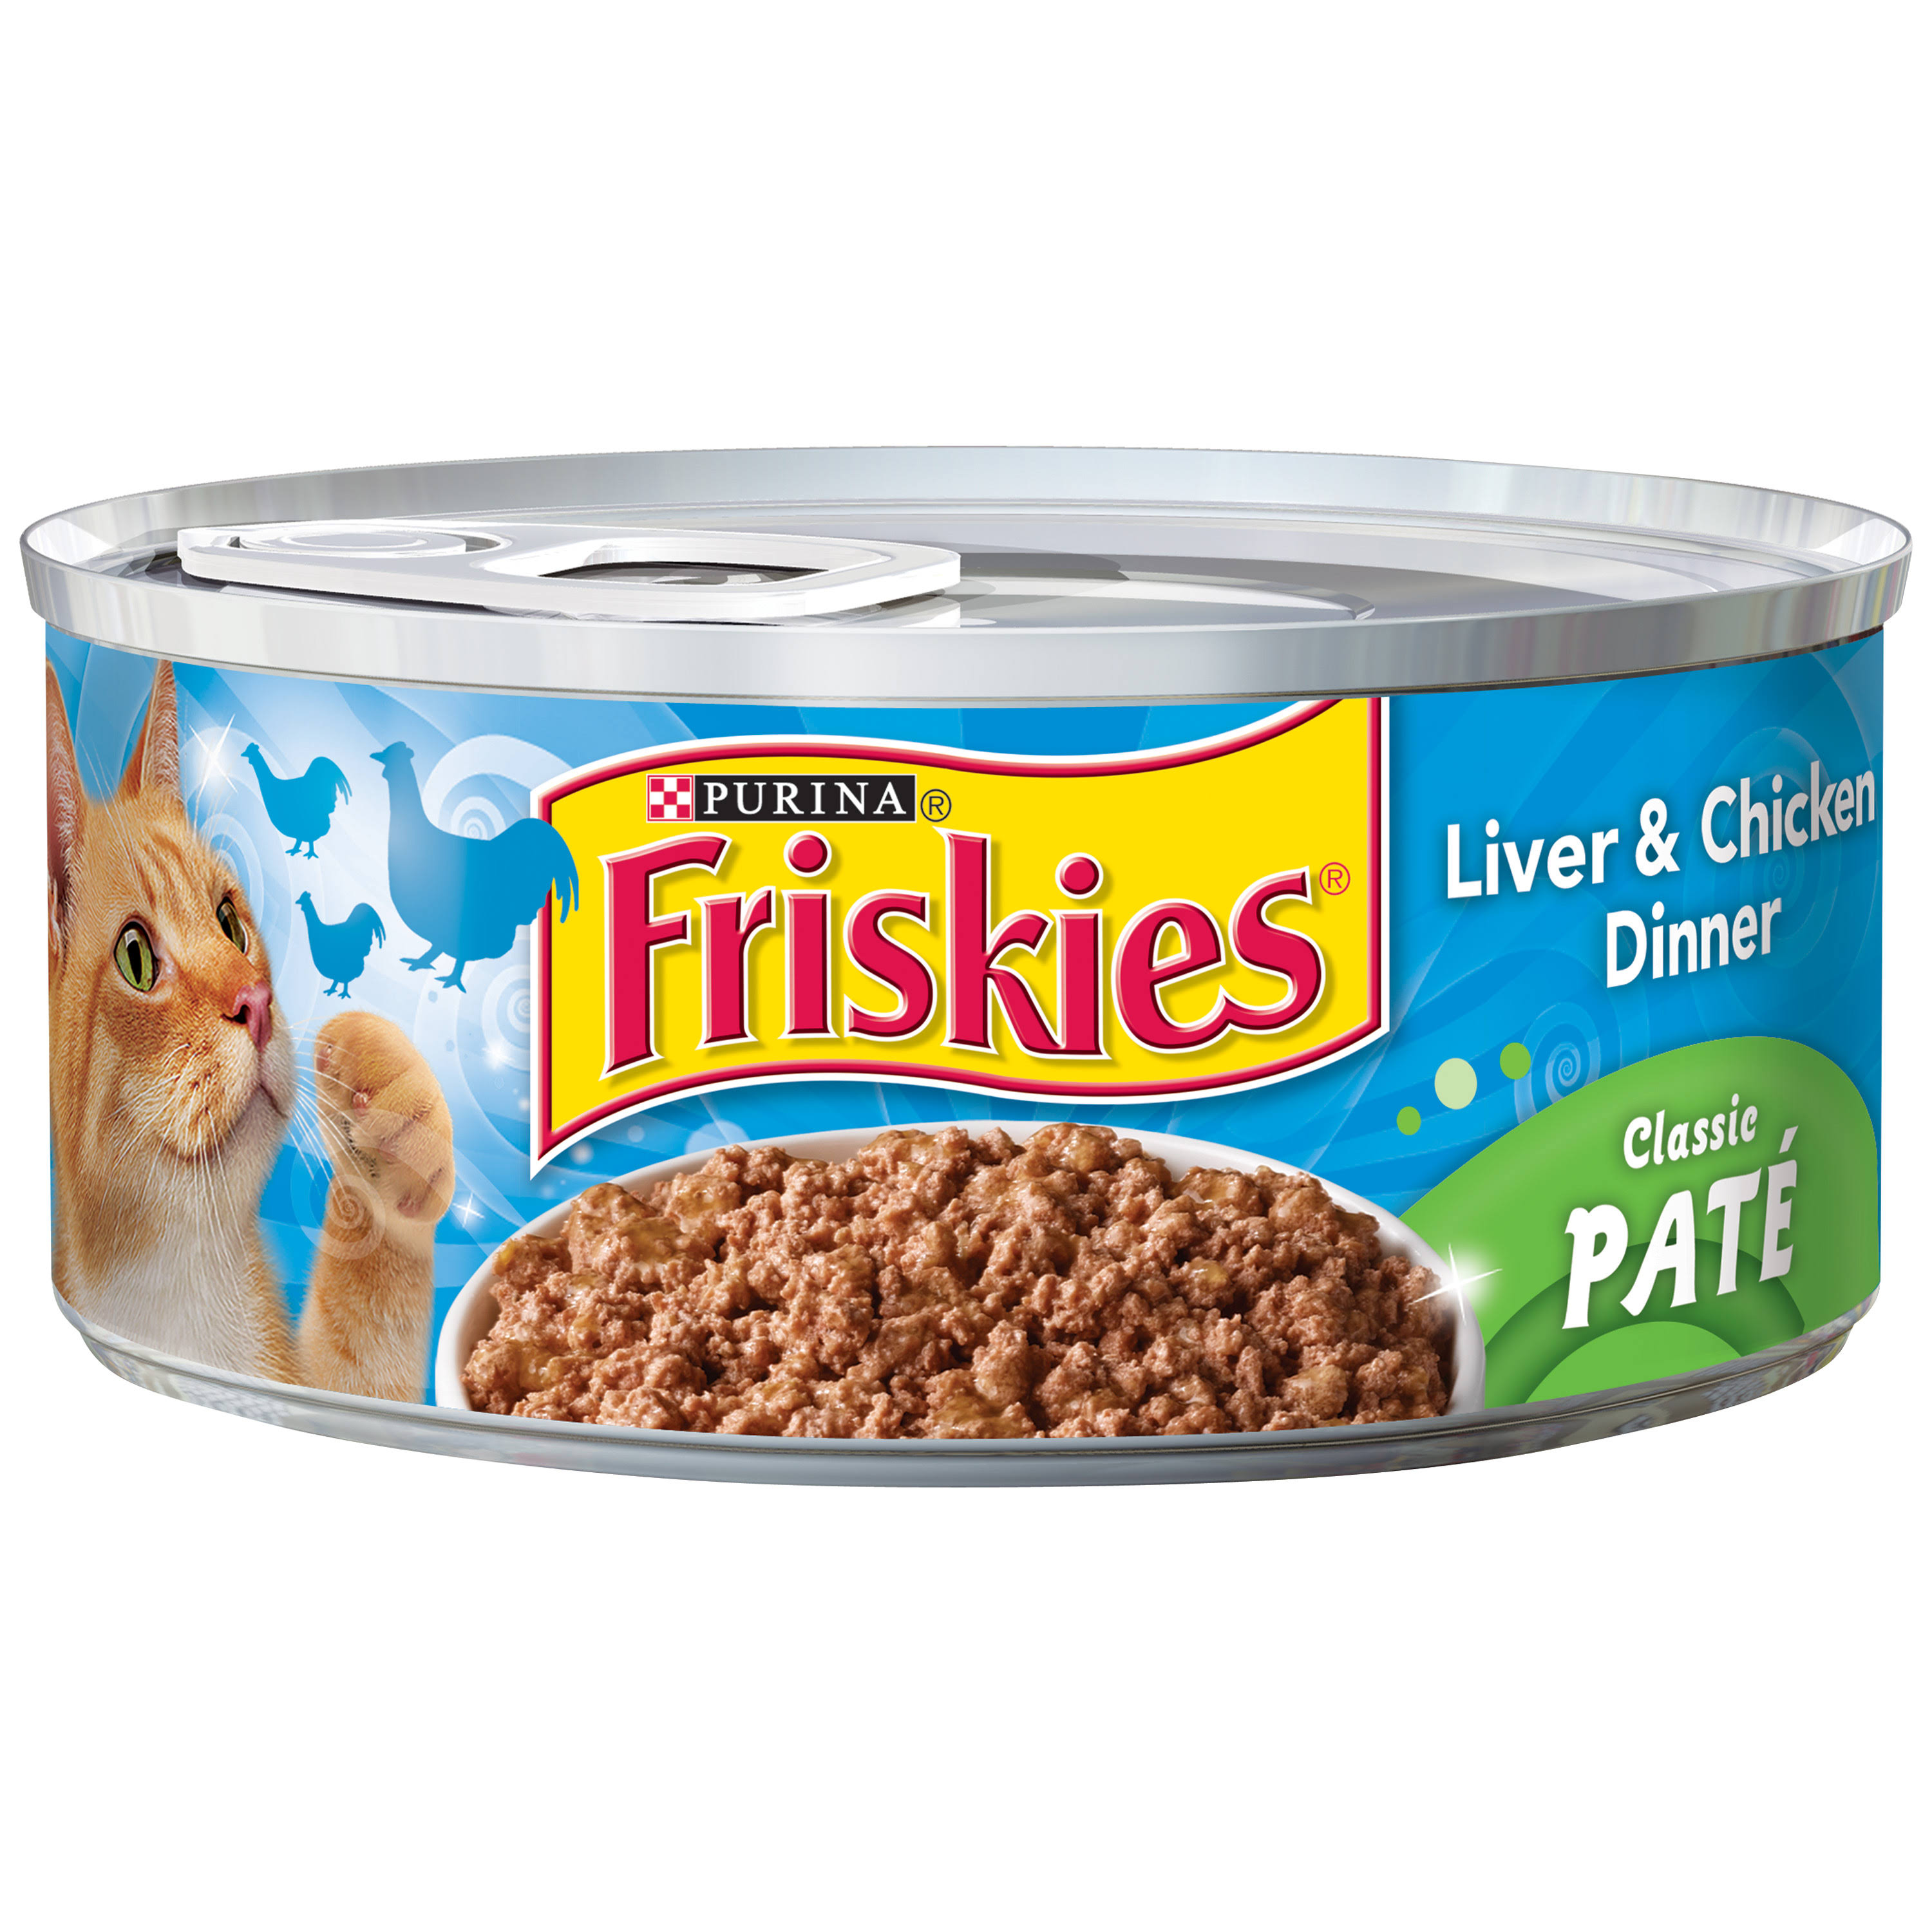 Purina Friskies Paté Cat Food - Liver & Chicken Dinner, 5.5 oz